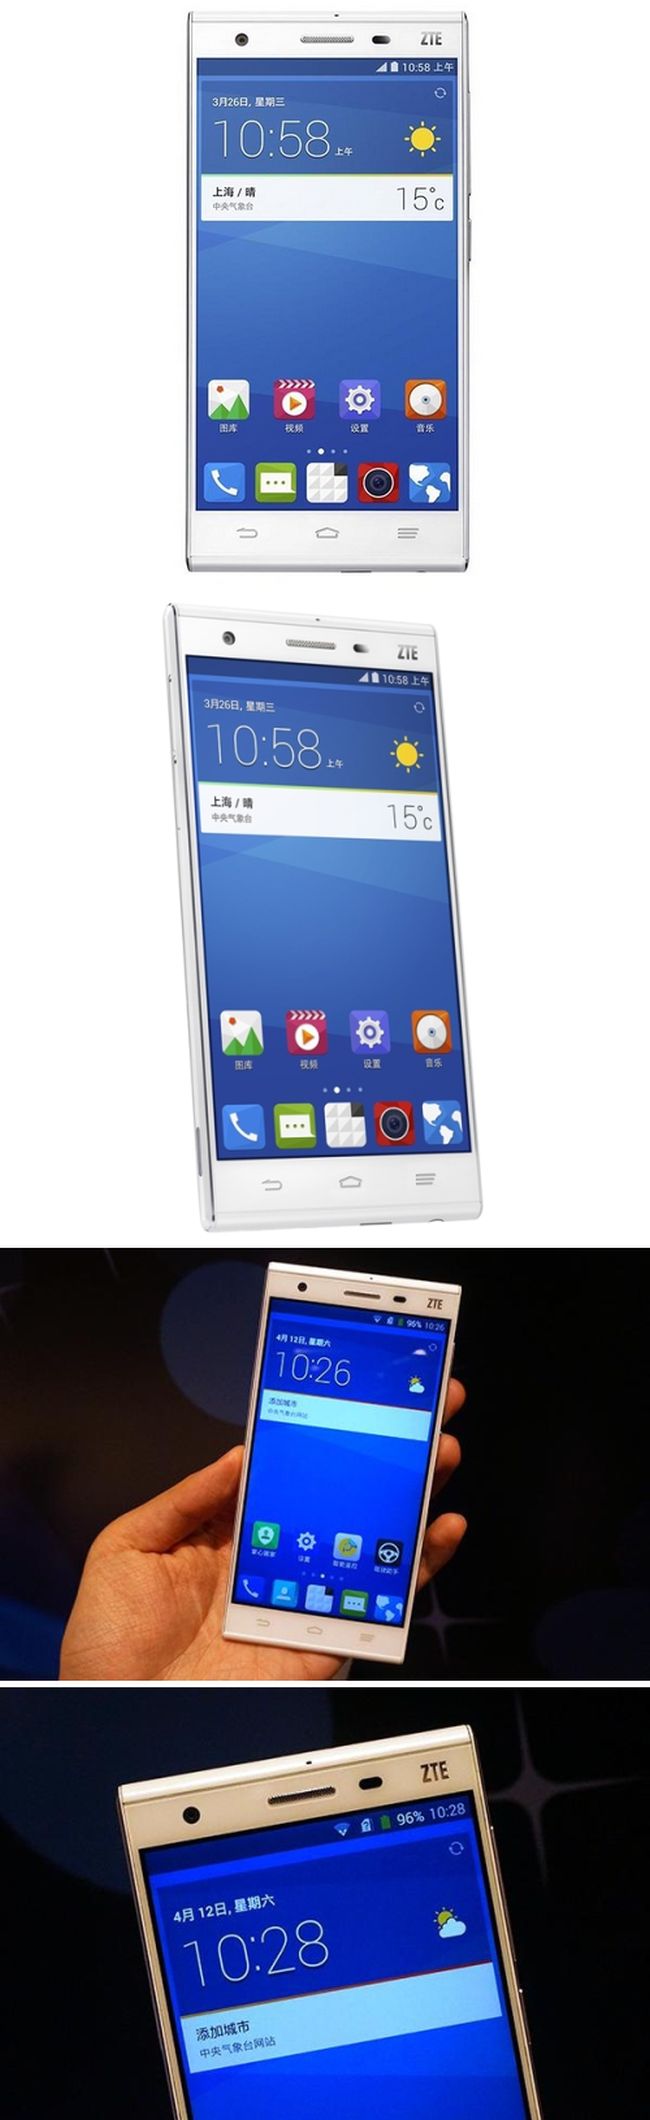 Megjelent a ZTE Star 1, a Huawei másolat